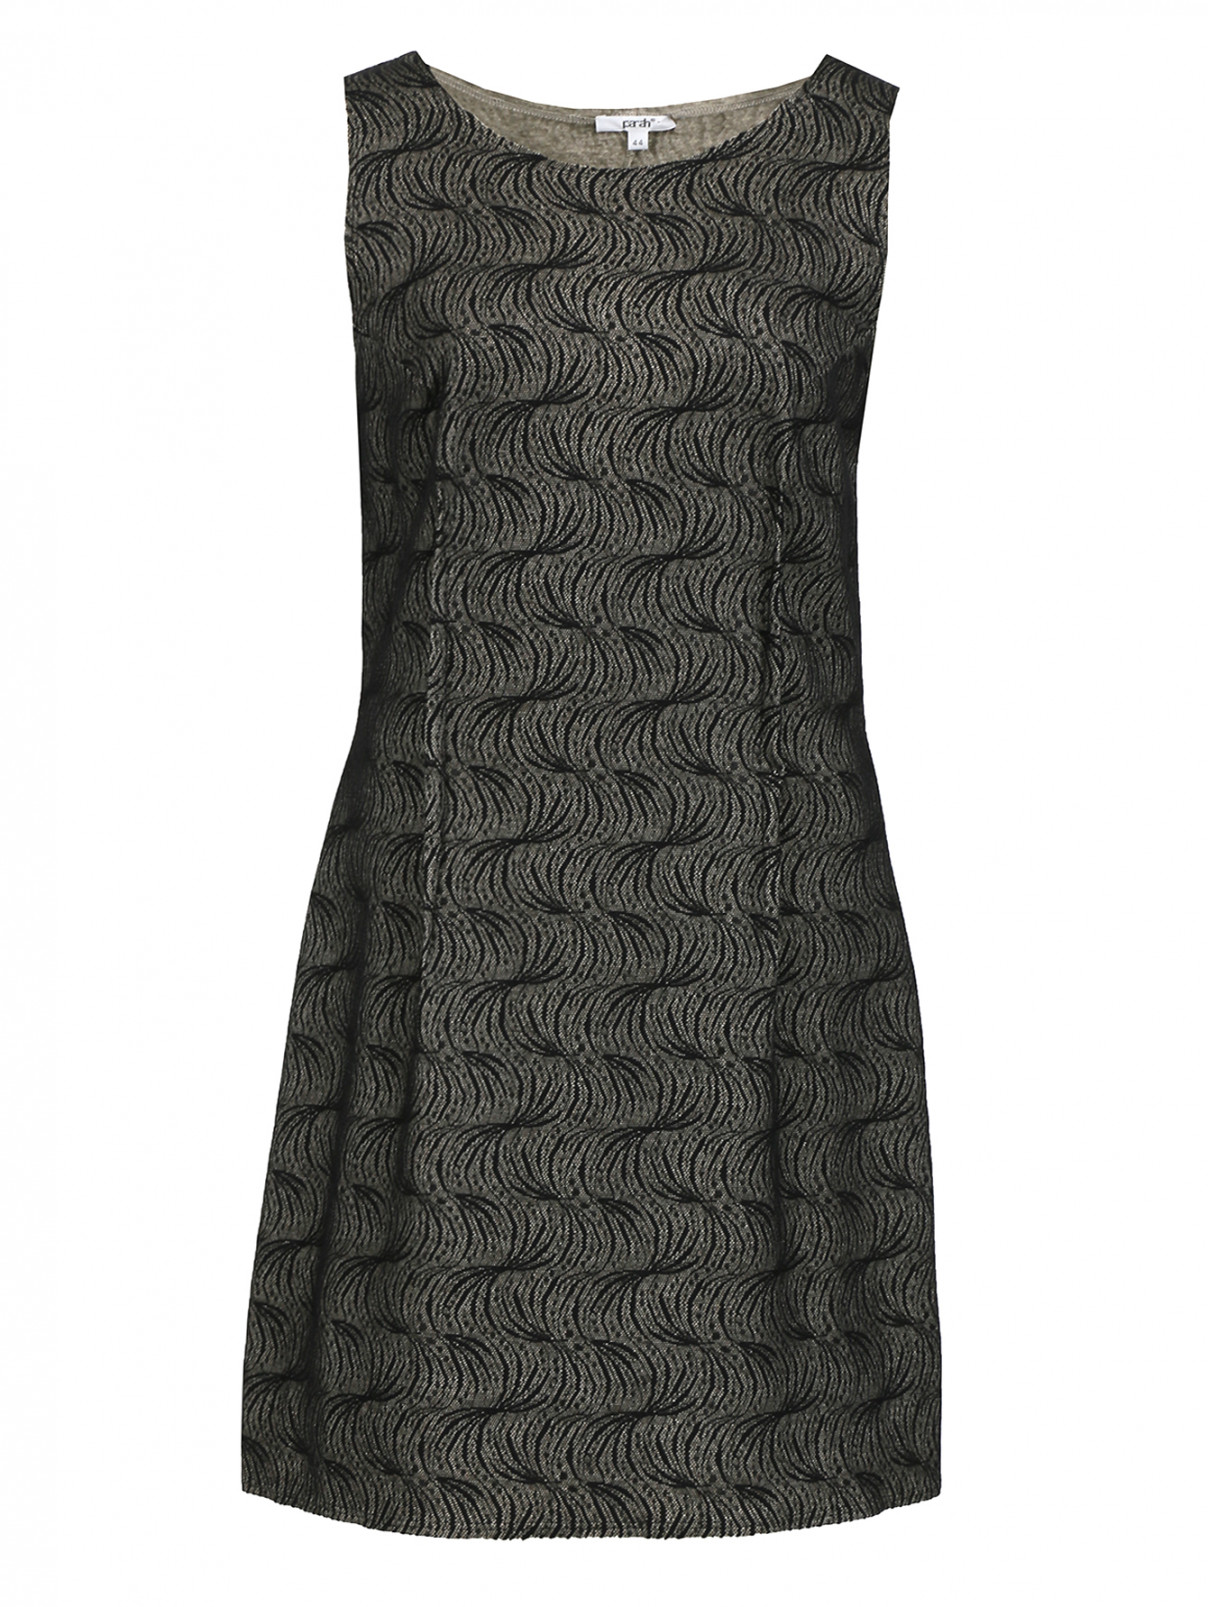 Трикотажное платье декорированное кружевом Parah  –  Общий вид  – Цвет:  Серый